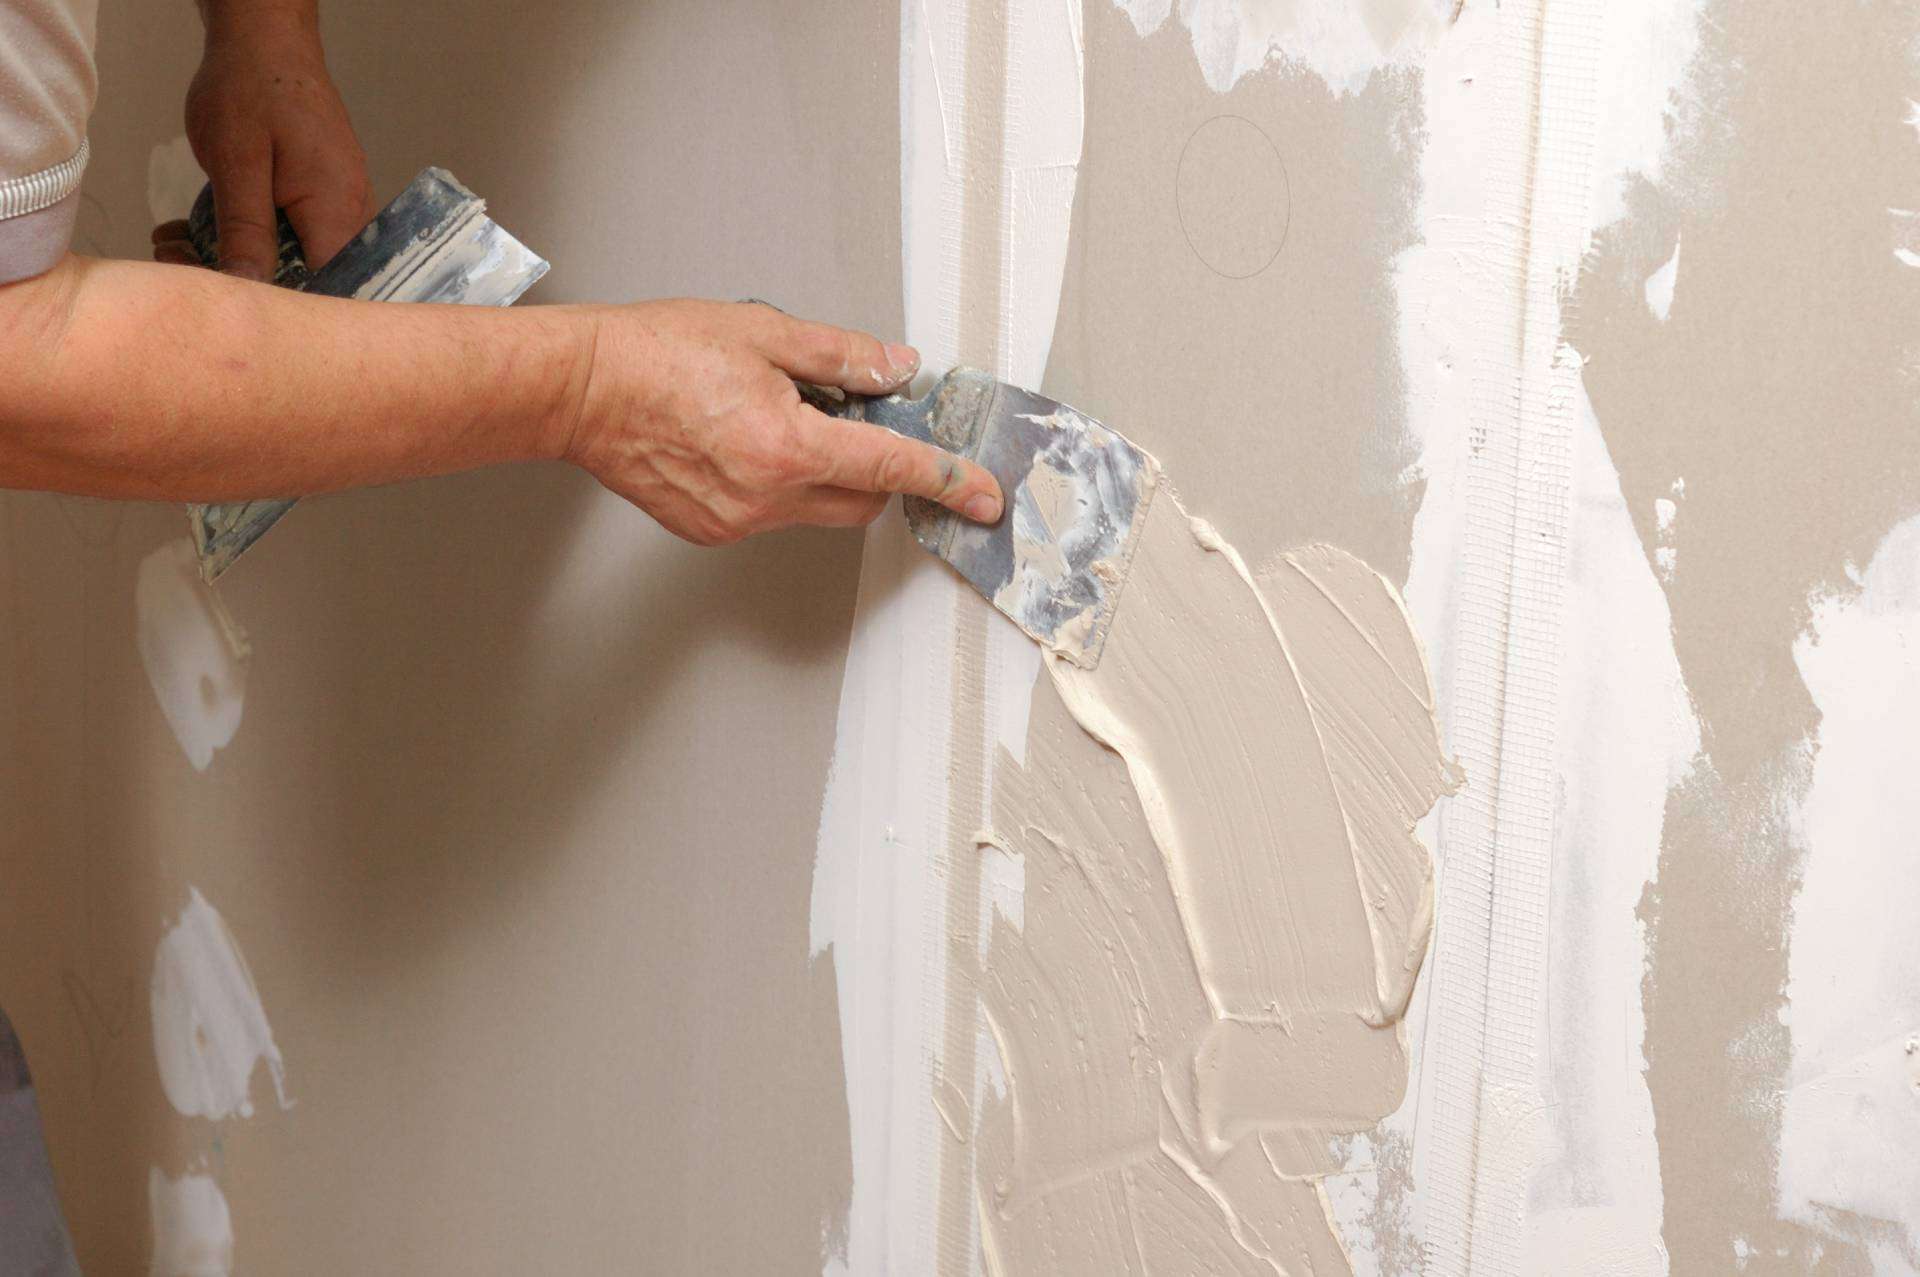 Repair holes in walls